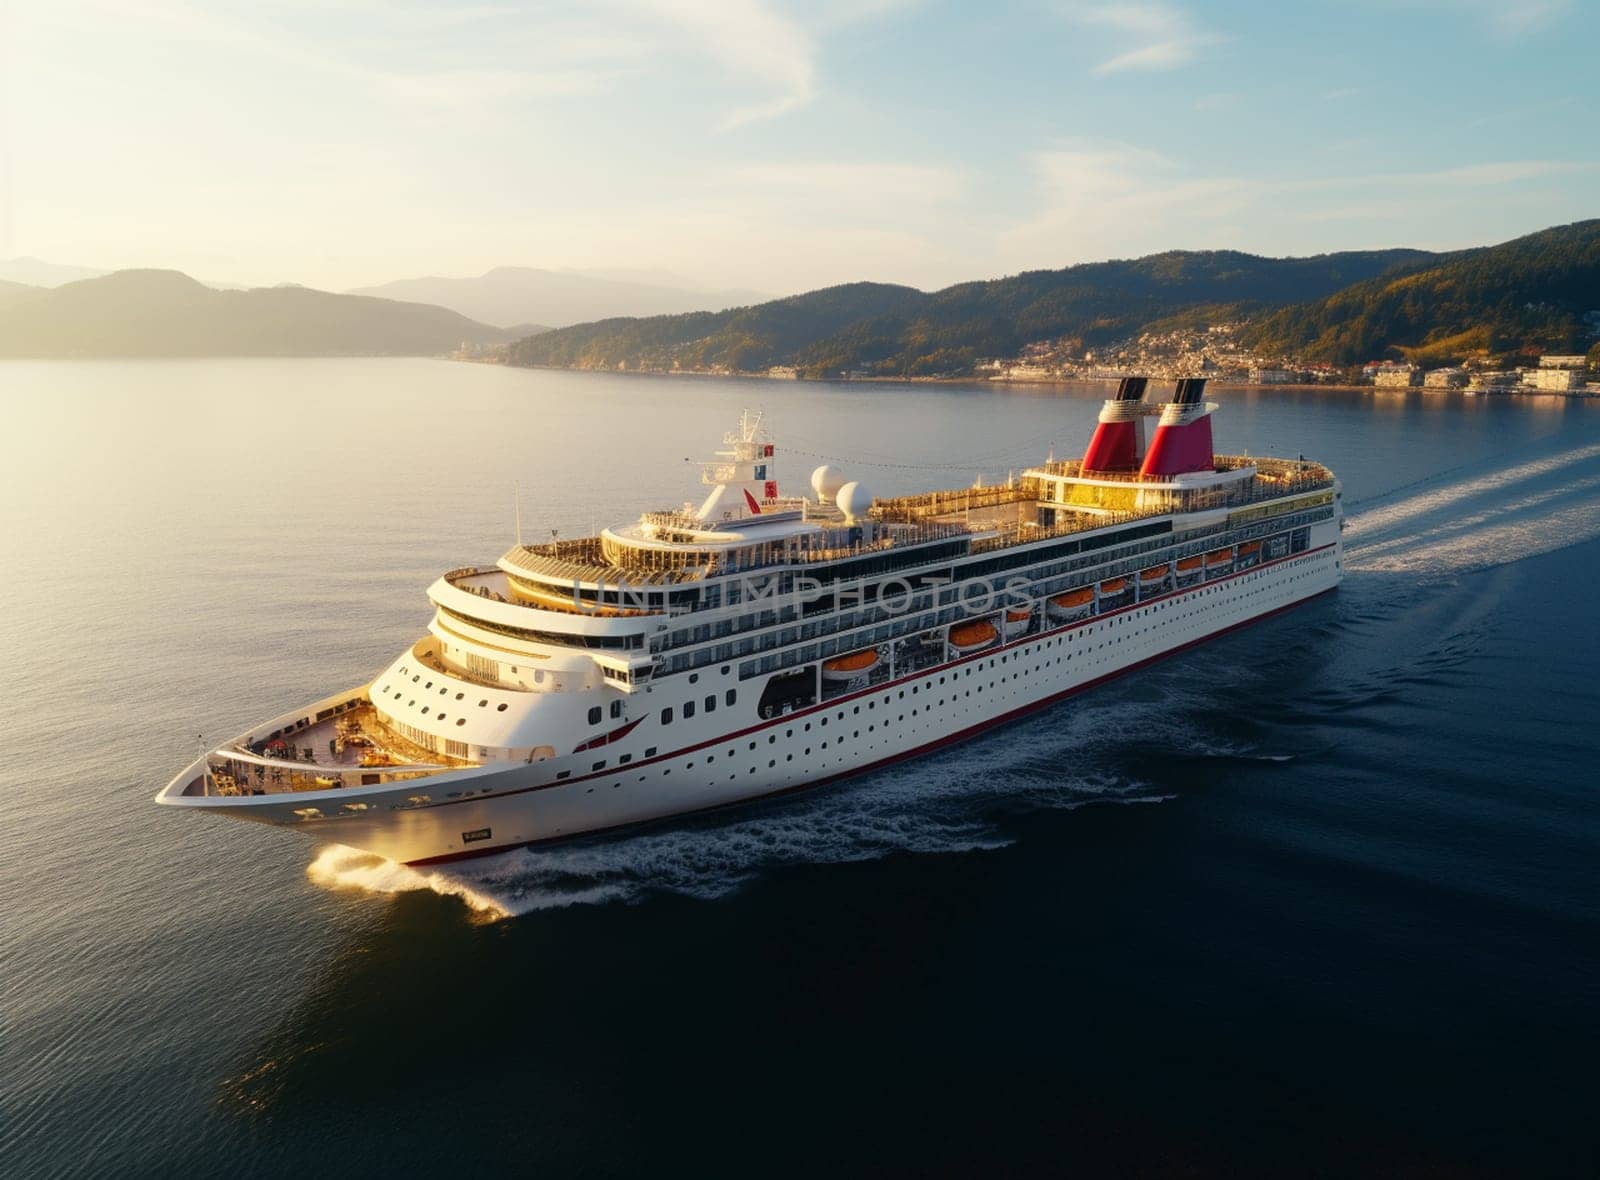 Luxury cruise ship sailing to port on sunrise . High quality photo